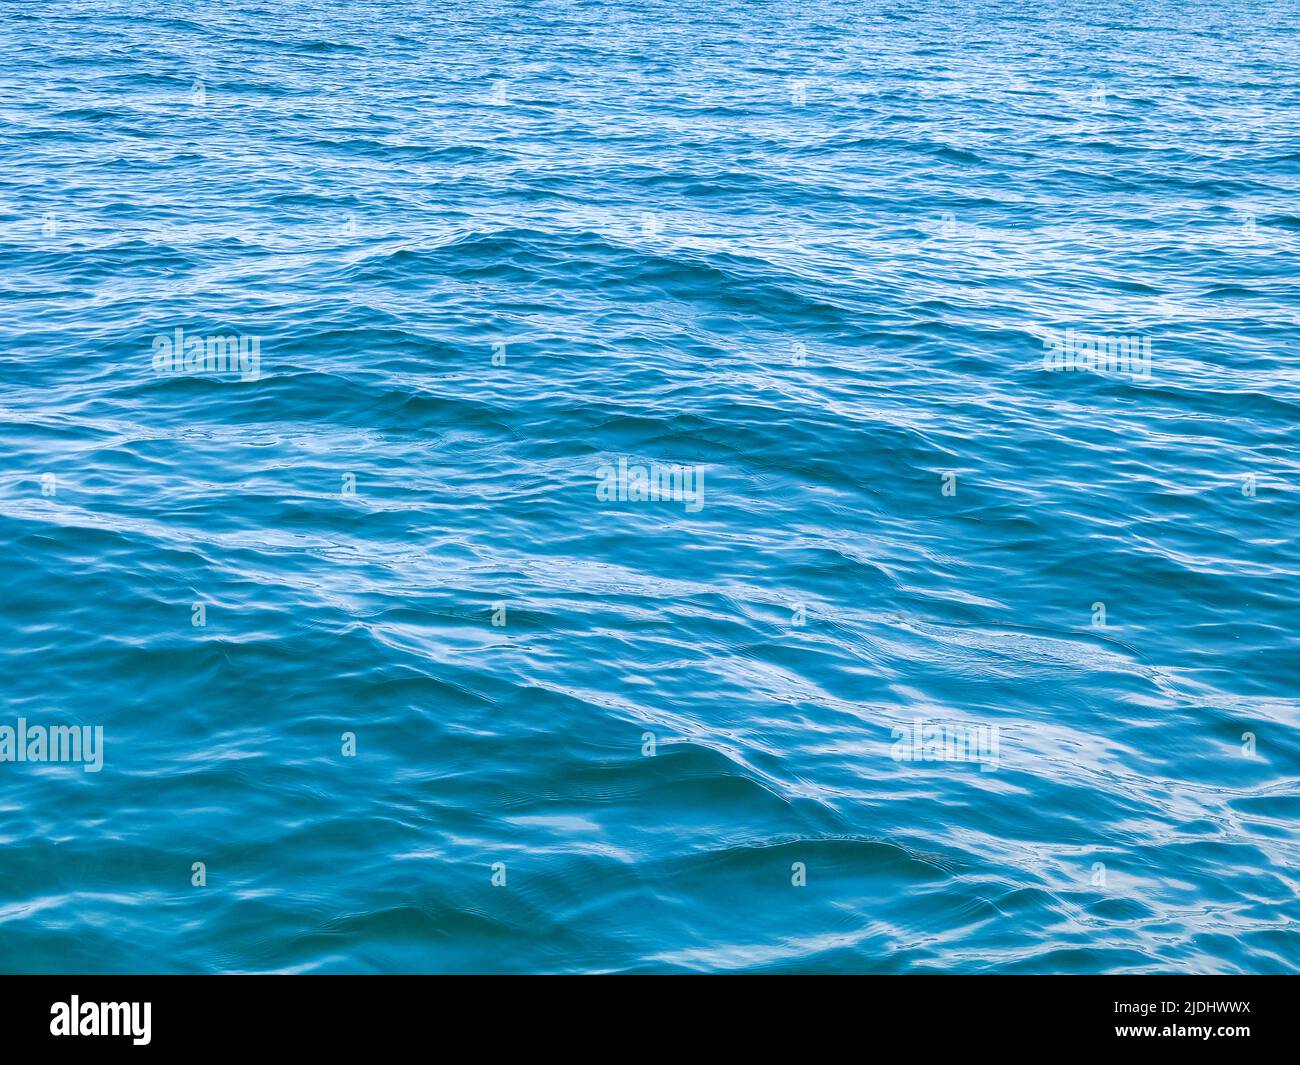 Agua dulce azul del lago Michigan con olas pequeñas Foto de stock